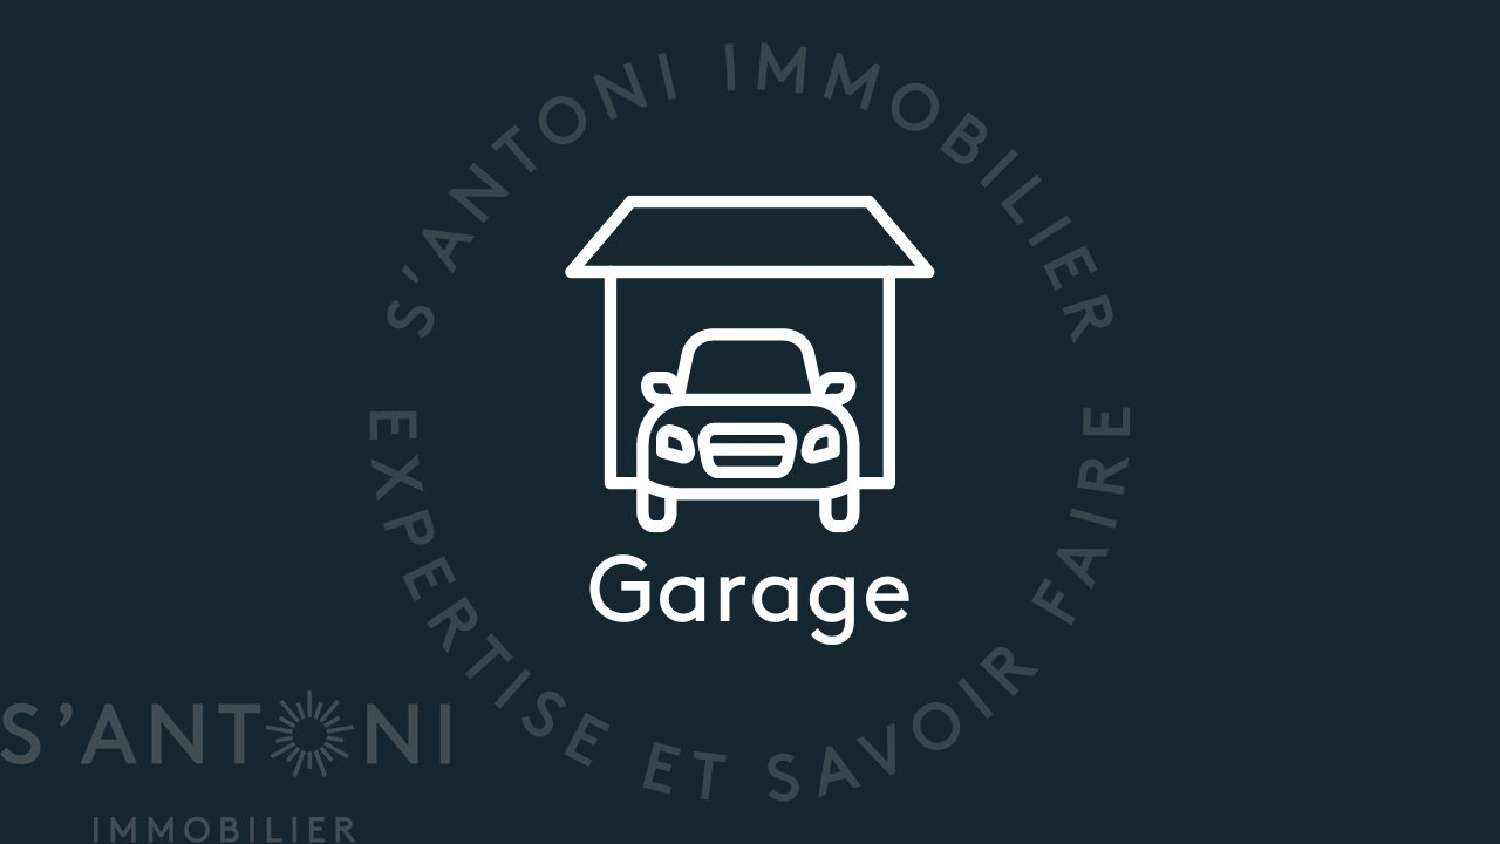  à vendre maison Frontignan Hérault 1